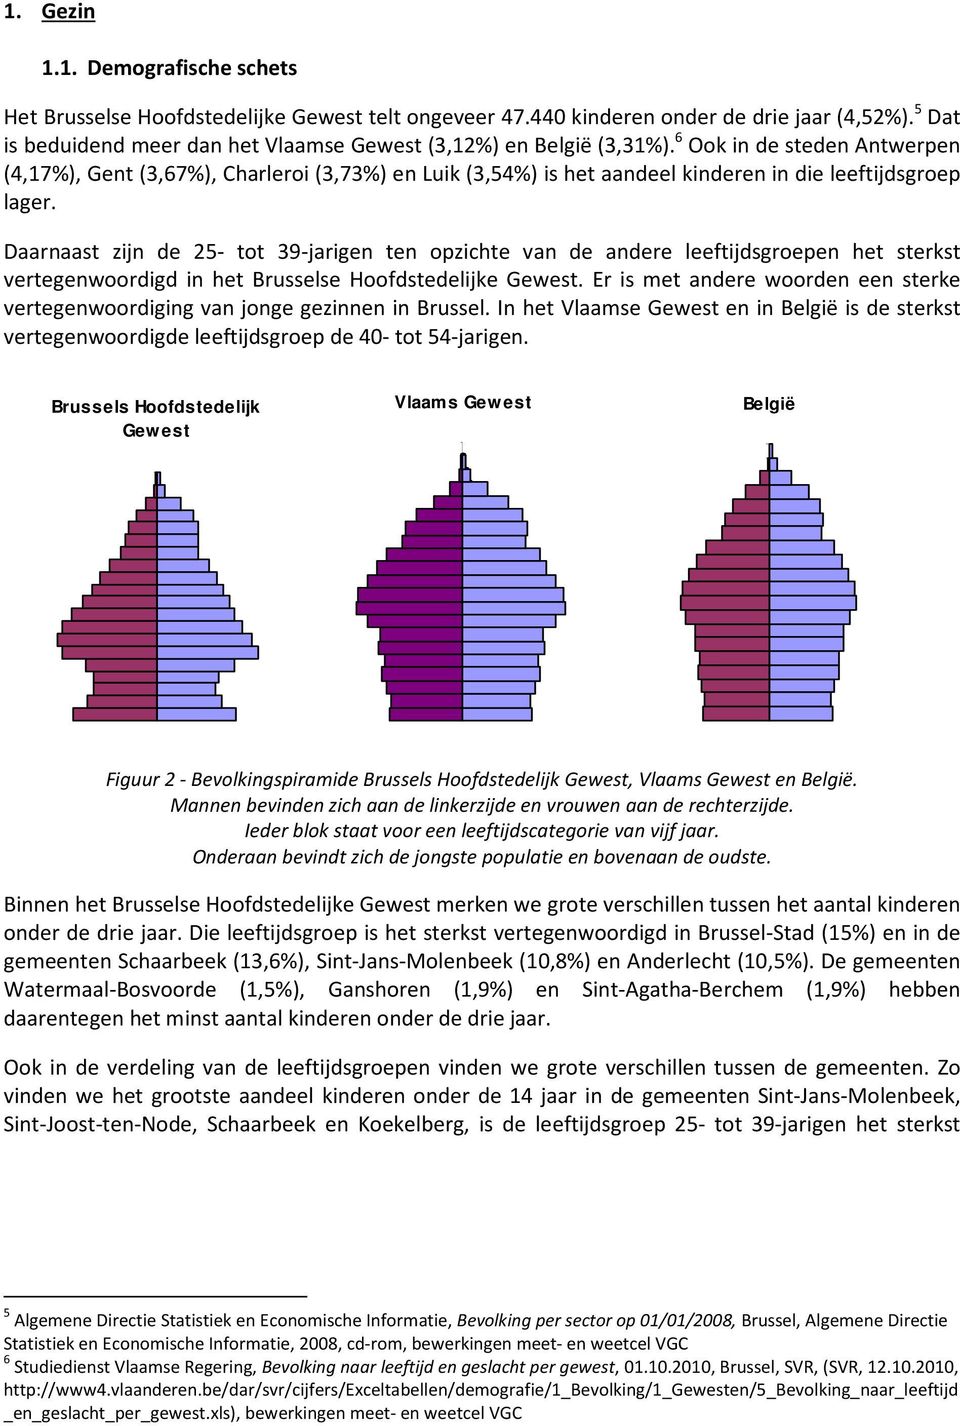 6 Ook in de steden Antwerpen (4,17%), Gent (3,67%), Charleroi (3,73%) en Luik (3,54%) is het aandeel kinderen in die leeftijdsgroep lager.